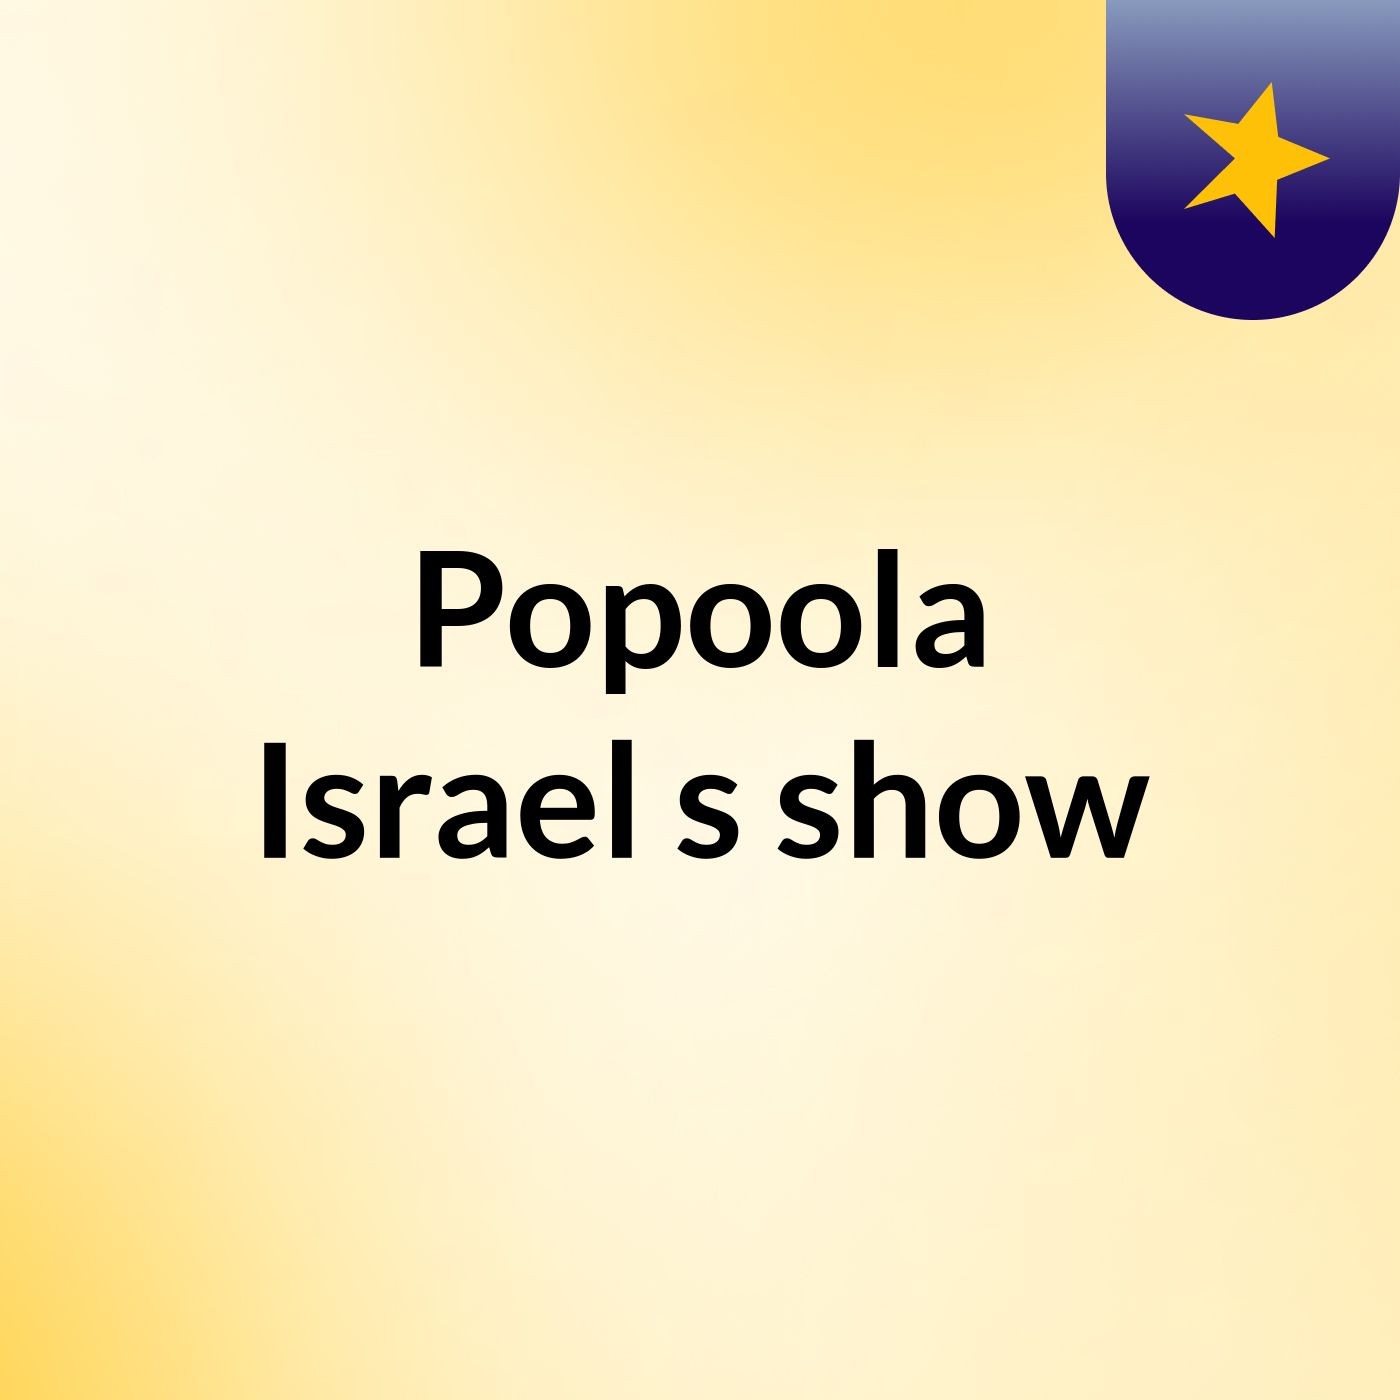 Episode 1 - Popoola Israel's show